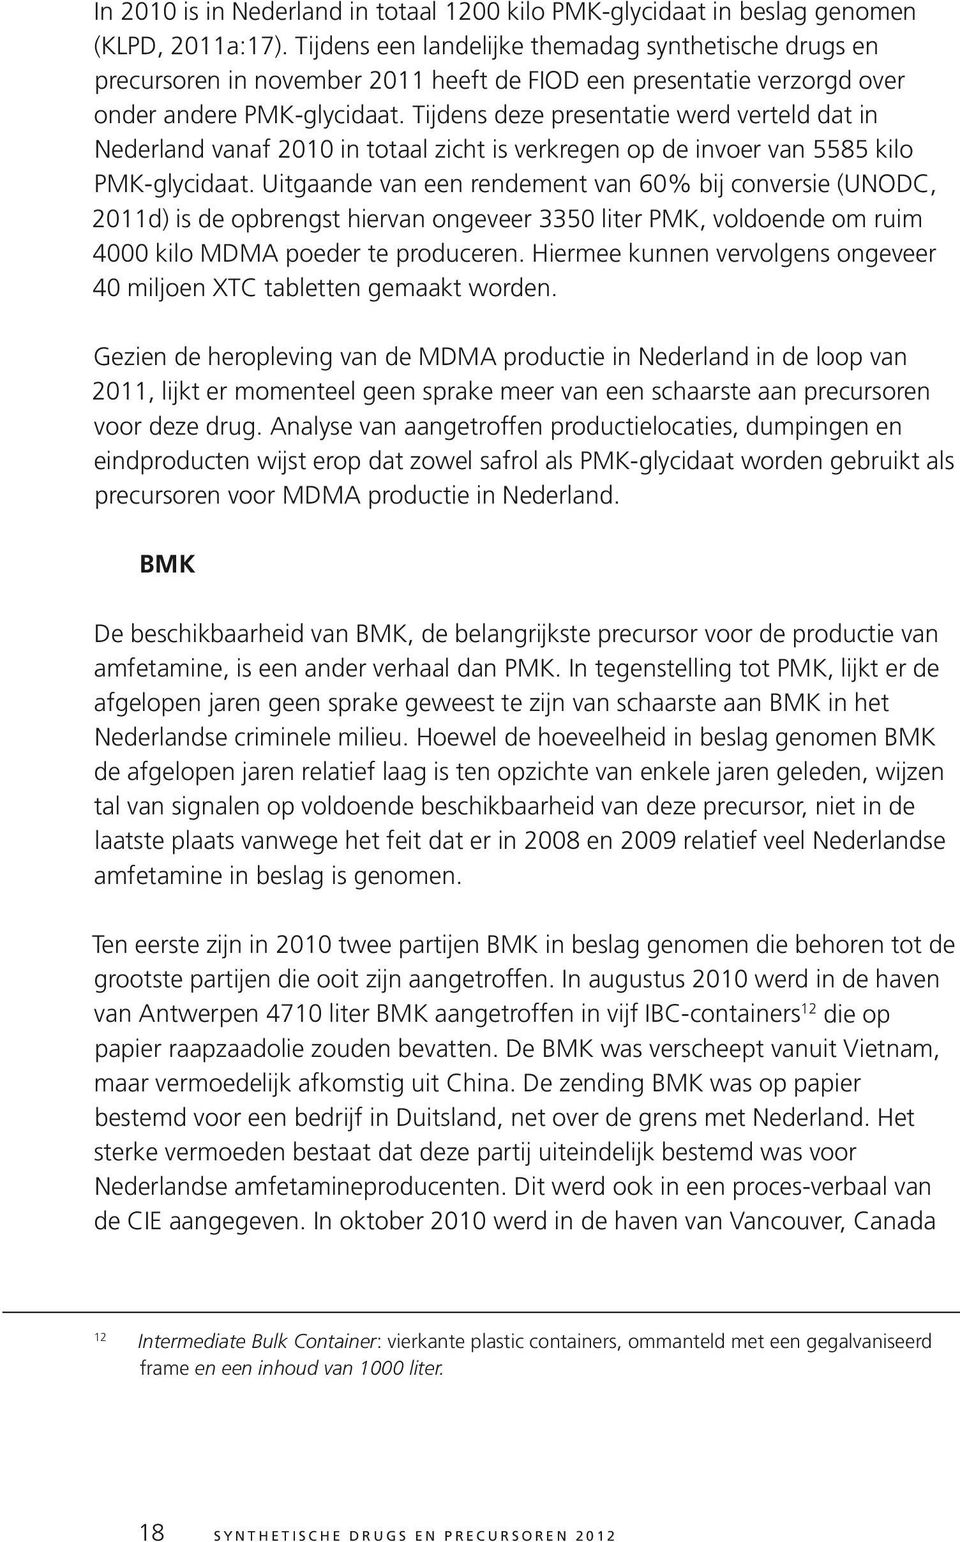 Tijdens deze presentatie werd verteld dat in Nederland vanaf 2010 in totaal zicht is verkregen op de invoer van 5585 kilo PMK-glycidaat.